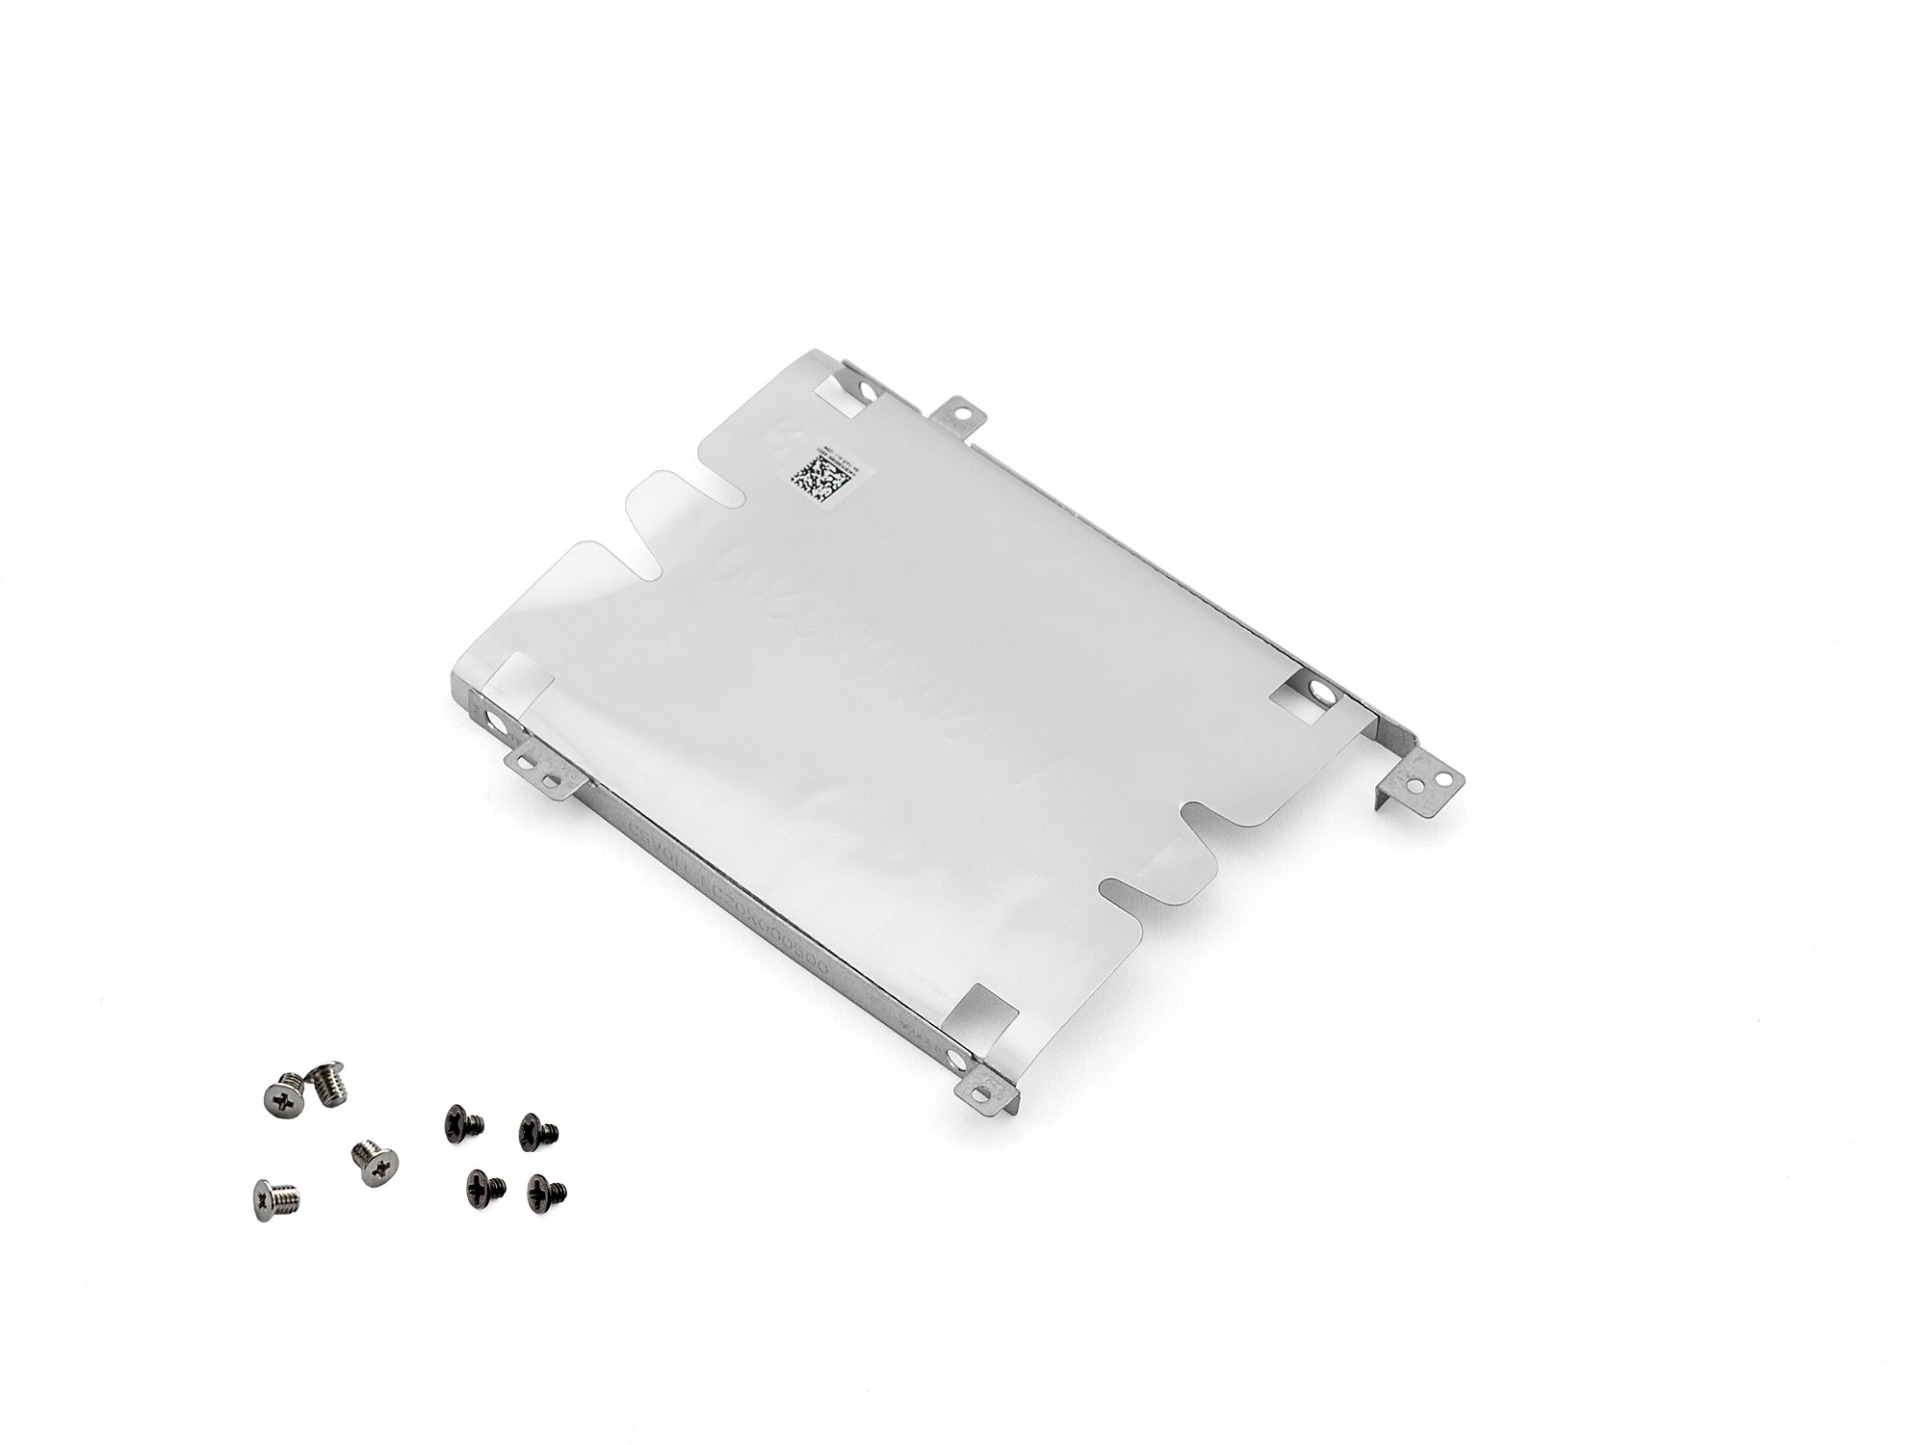 Festplatten-Einbaurahmen für den 2. Festplatten Schacht inkl. Schrauben Original für Acer Nitro 5 (AN515-41)